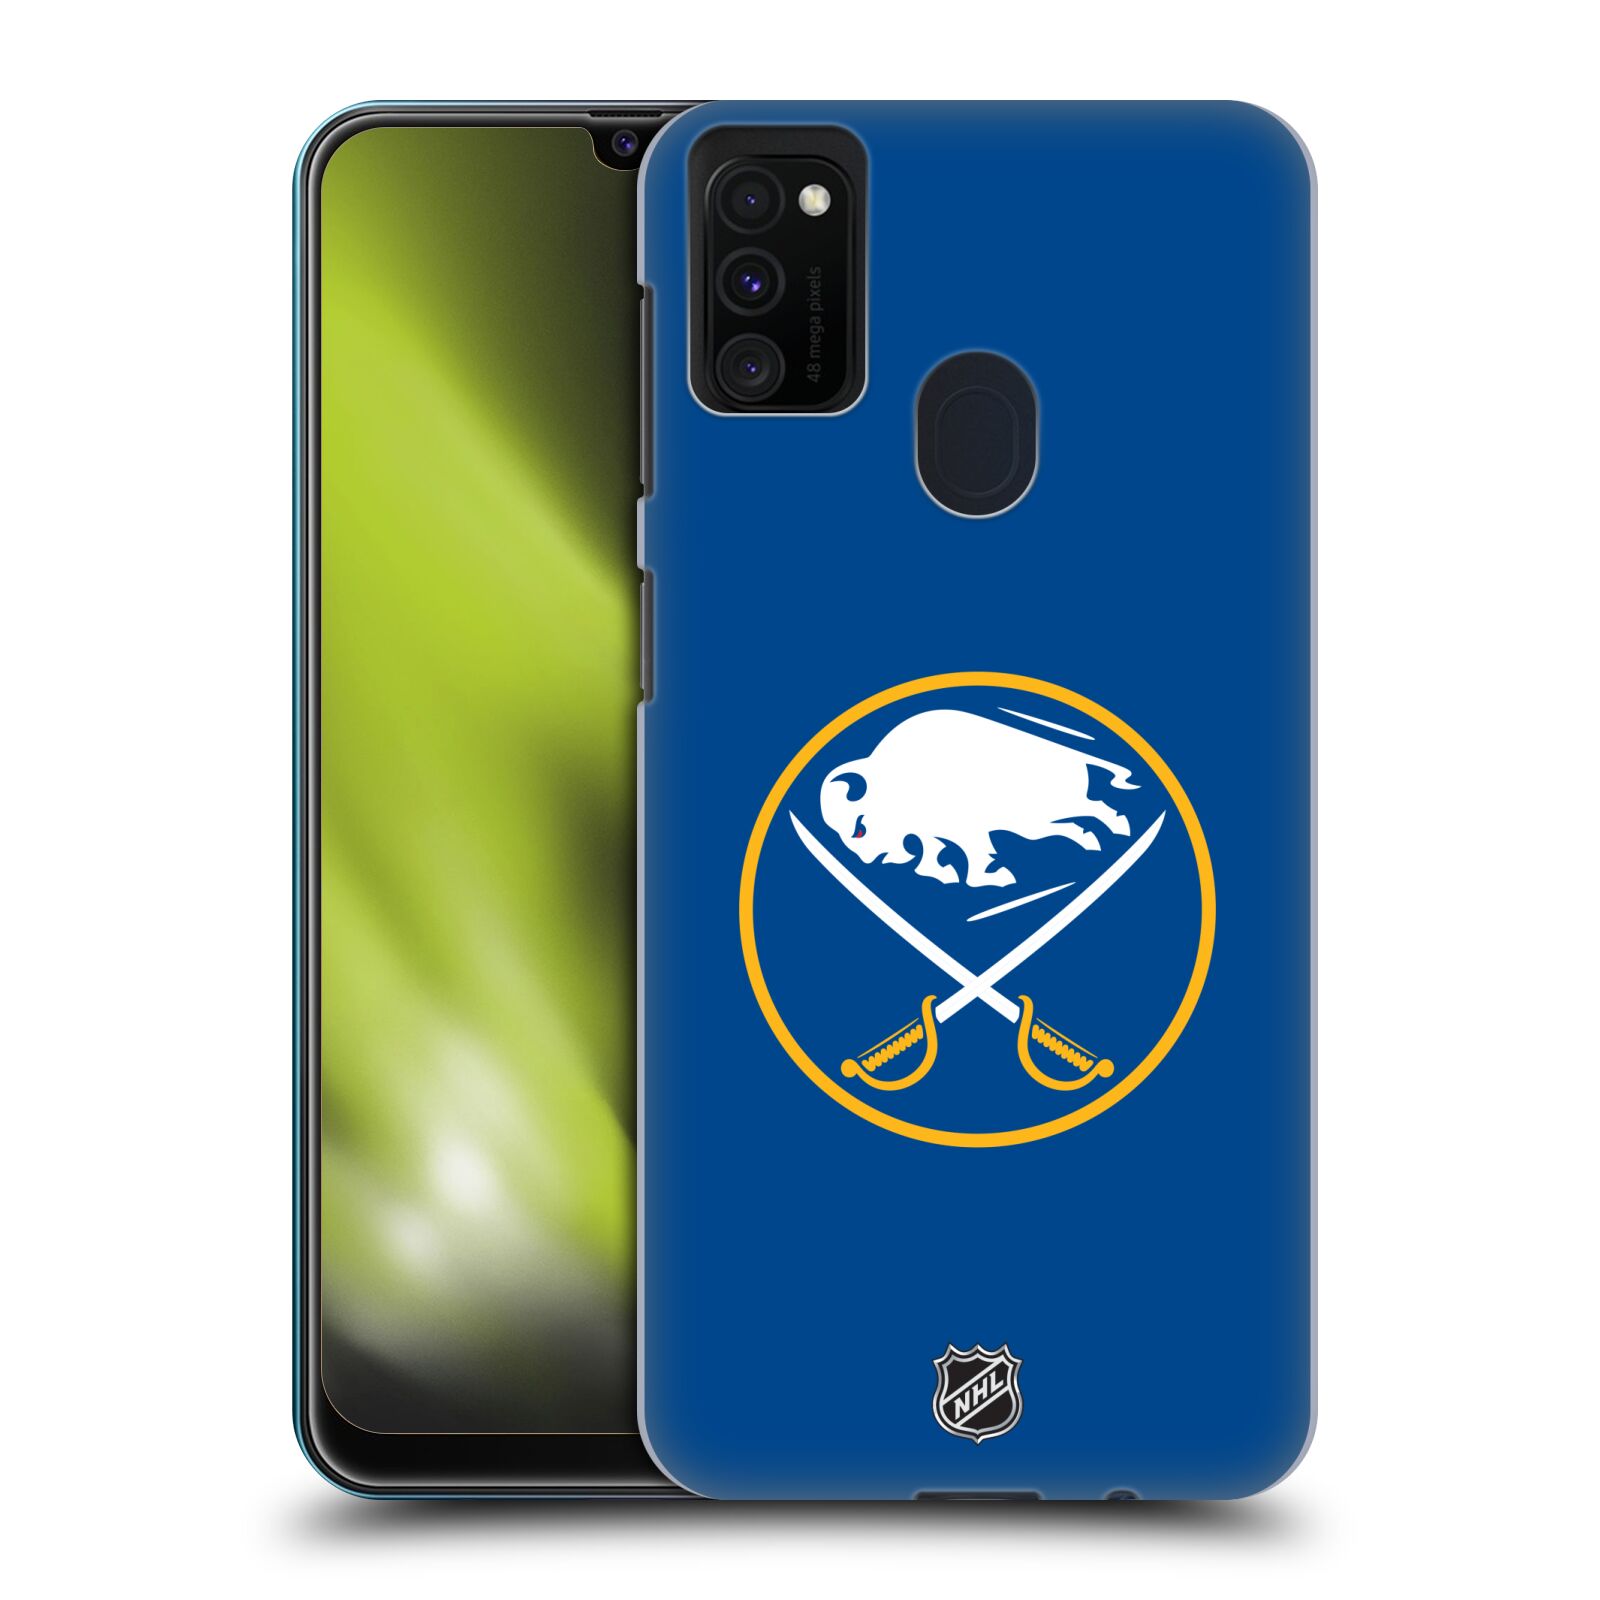 Pouzdro na mobil Samsung Galaxy M21 - HEAD CASE - Hokej NHL - Buffalo Sabres - modré pozadí